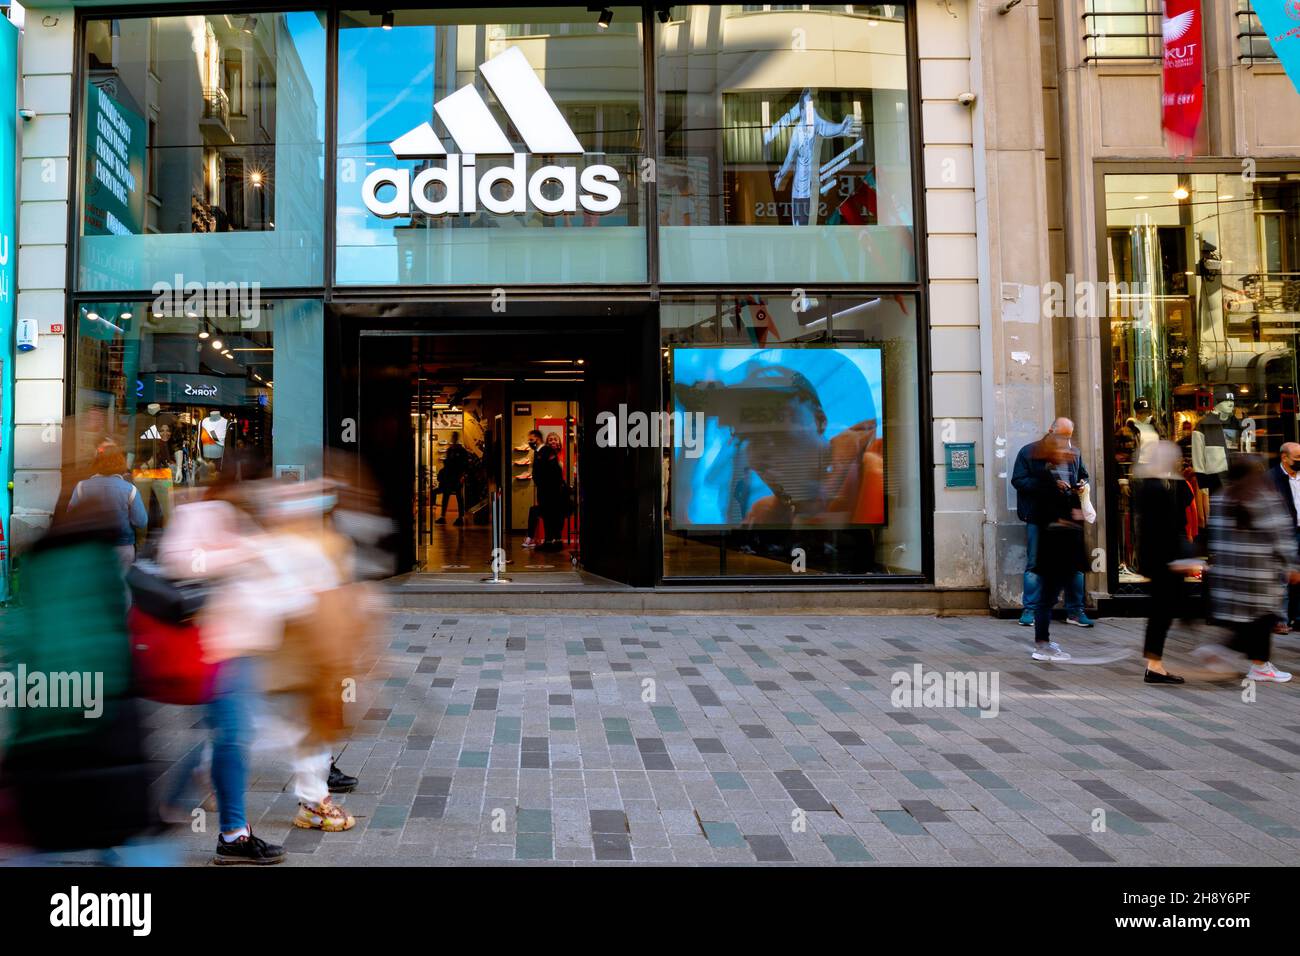 Adidas Store. Adidas Store in der Istiklal Avenue oder Istiklal Caddesi in türkischer Sprache. Bewegung der Menschen. Taksim Istanbul Türkei - 11.13.2021 Stockfoto